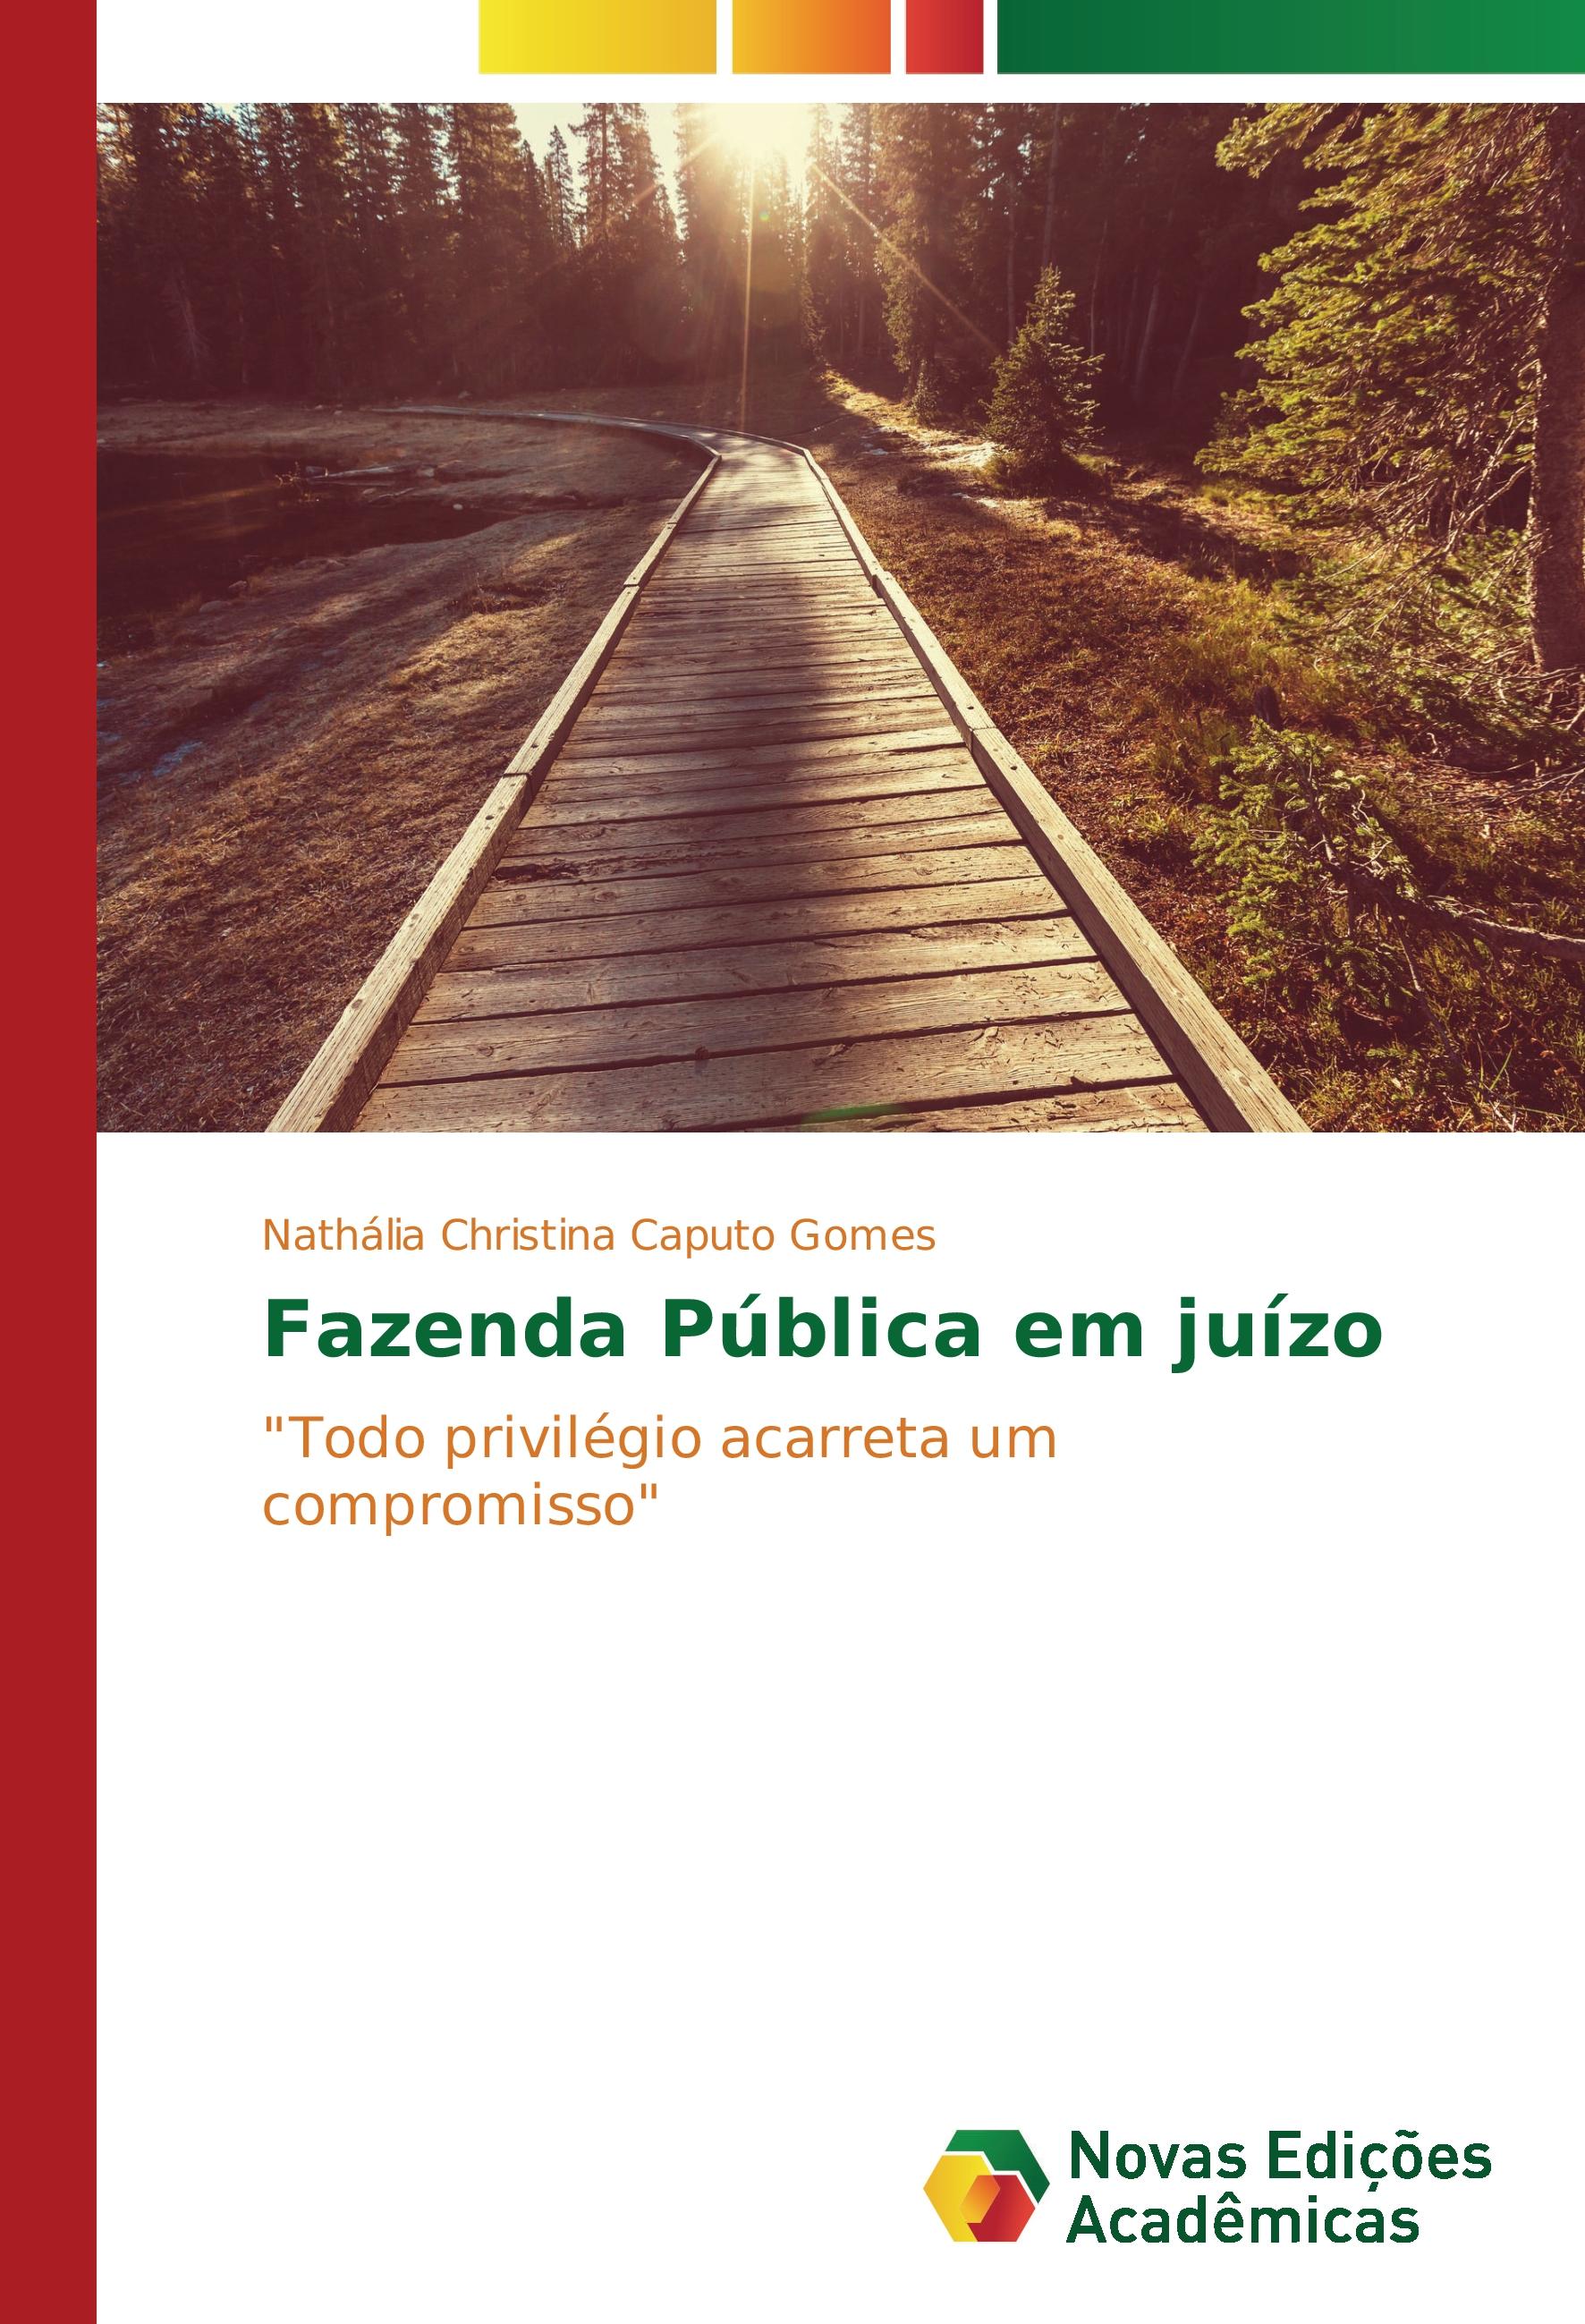 Fazenda Pública em juízo - Nathália Christina Caputo Gomes